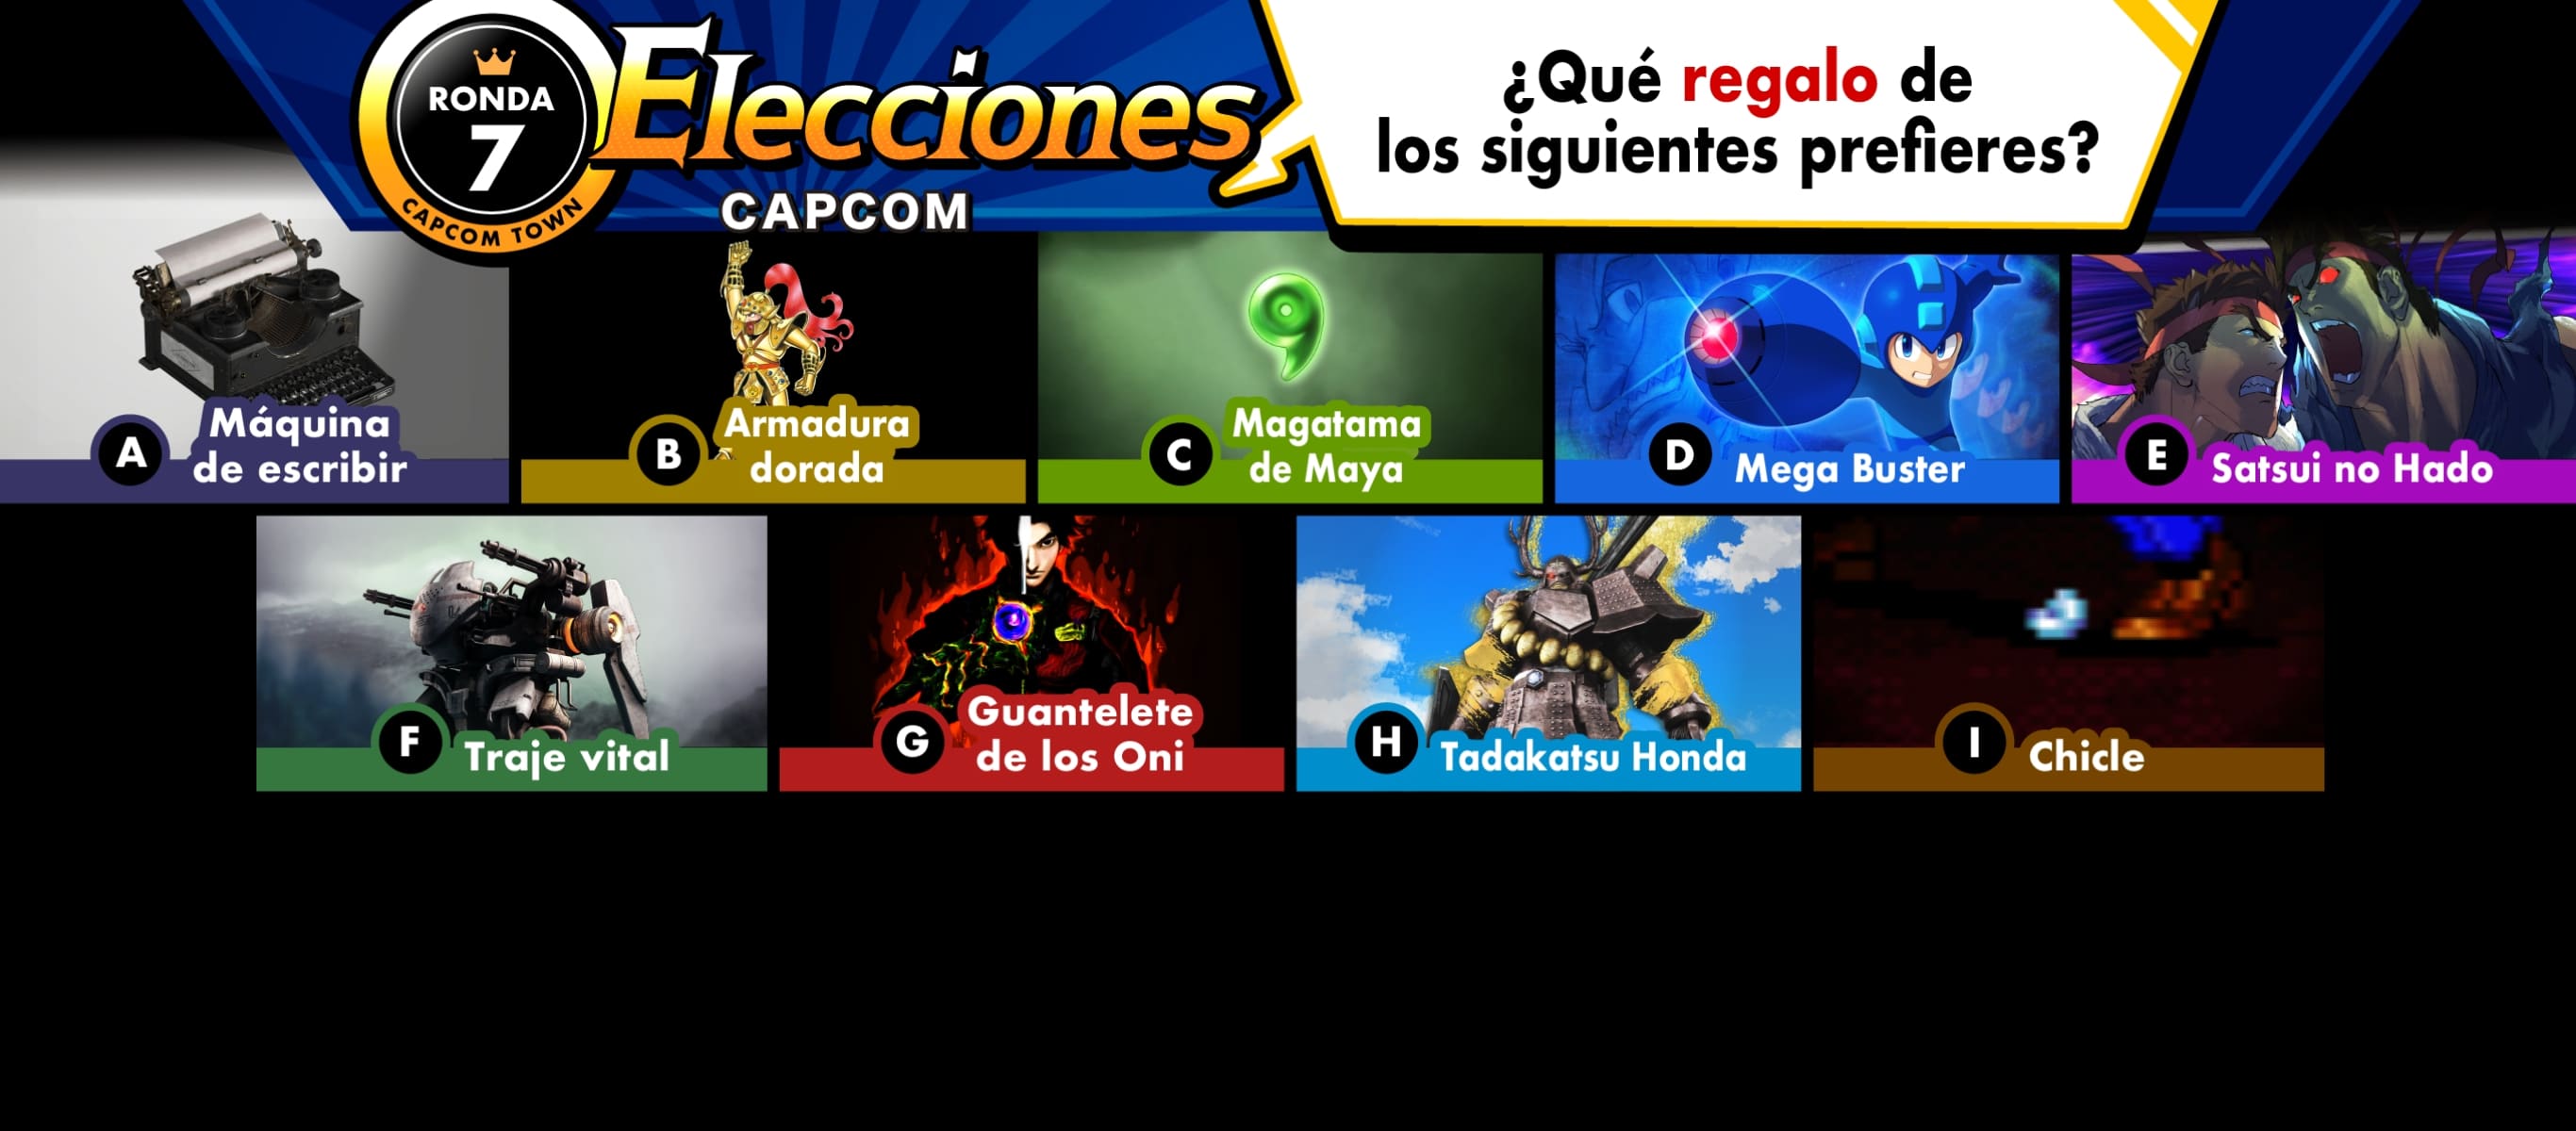 Elecciones de Capcom: ronda 7 ¿Qué regalo de los siguientes prefieres?